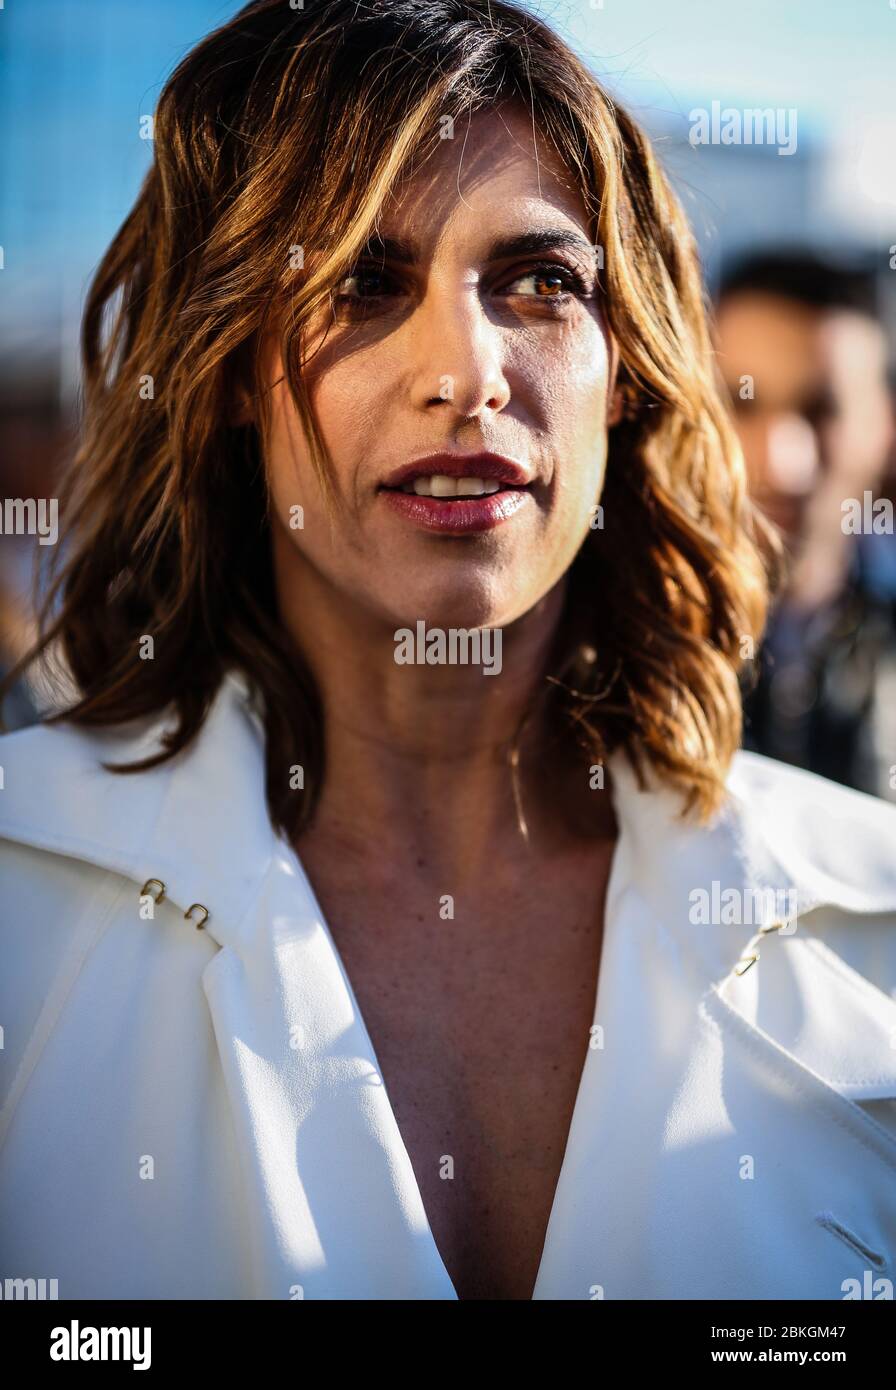 MAILAND, Italien – Februar 19 2020: Elisabetta Canalis auf der Straße während der Mailänder Modewoche. Stockfoto